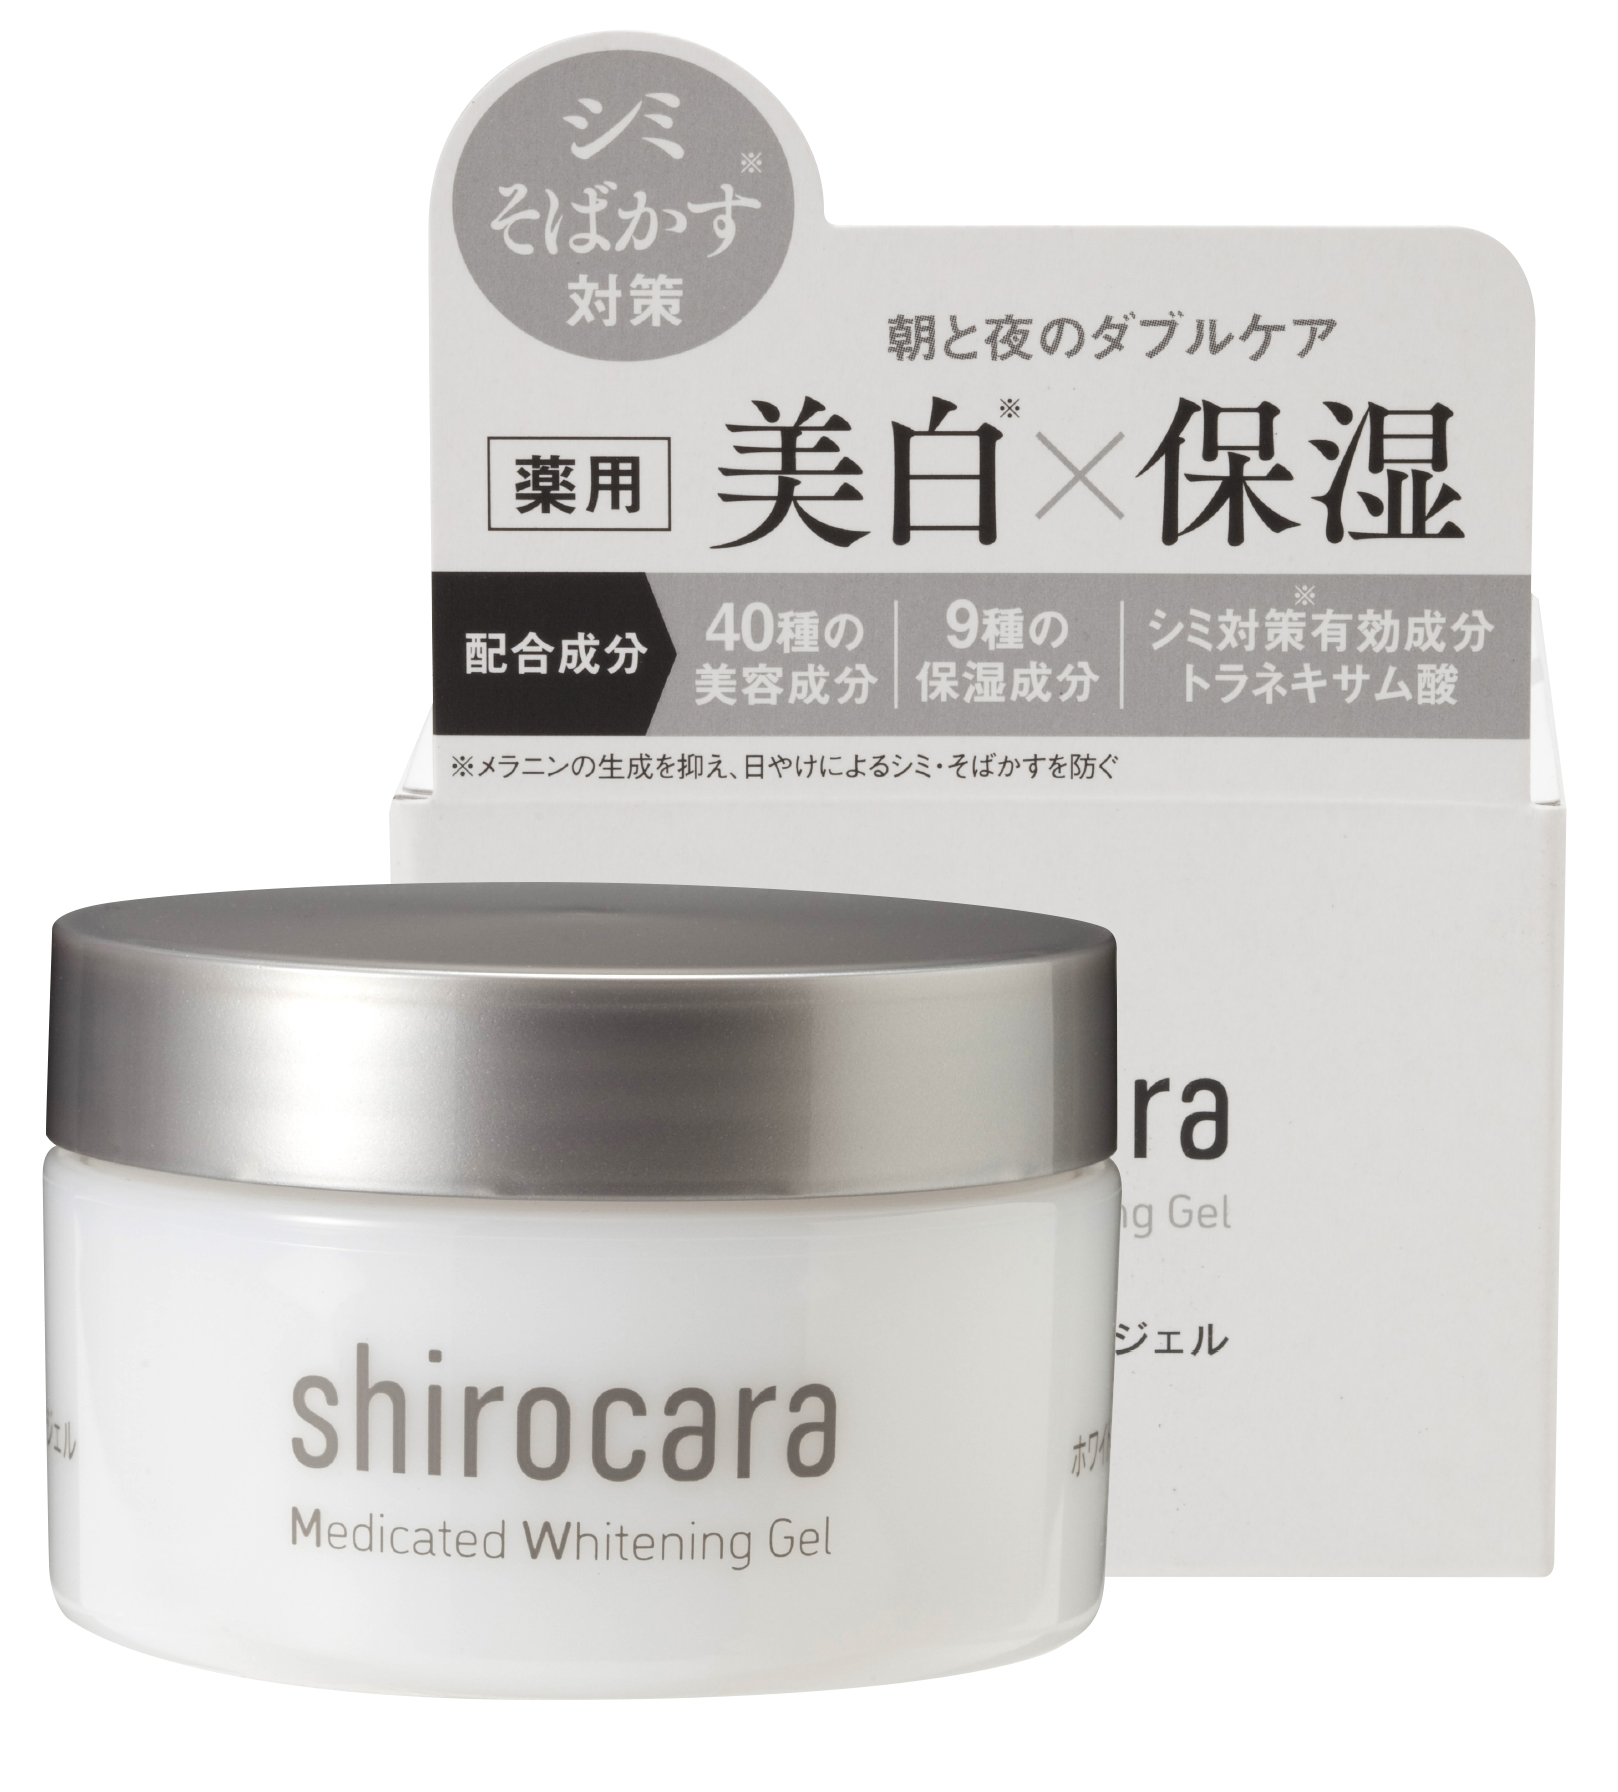 新商品発売‼「薬用ホワイトニングジェルshirocara（シロカラ 